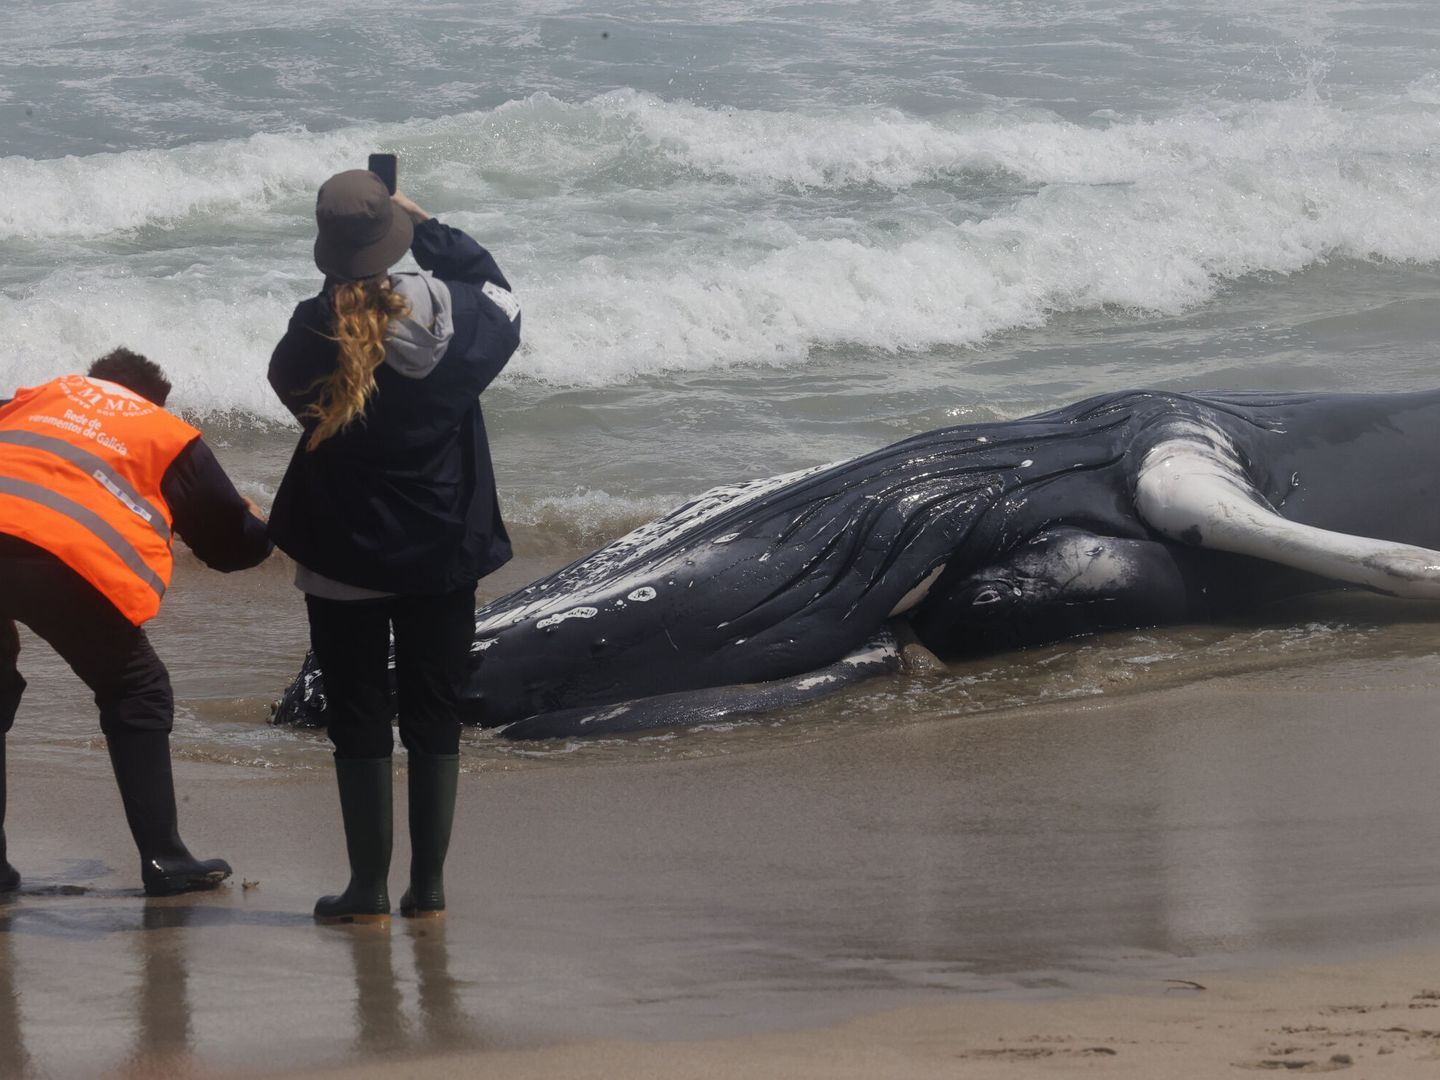 Vista de la ballena jorobada, una especie que raras veces se avista por las costas de Galicia. (EFE/Kiko Delgado)